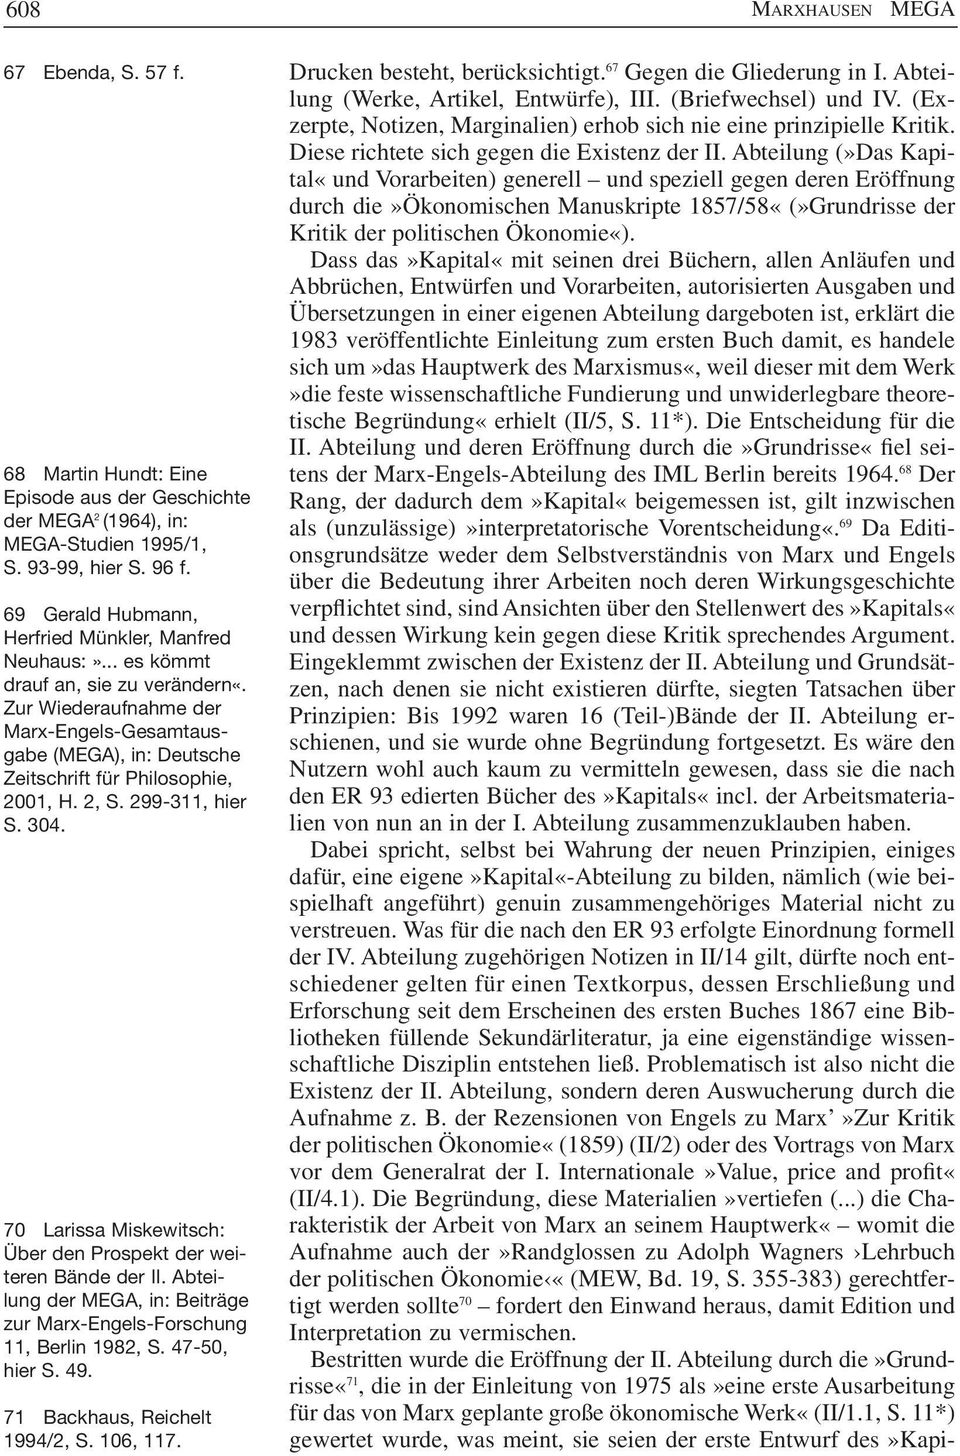 Zur Wiederaufnahme der Marx-Engels-Gesamtausgabe (MEGA), in: Deutsche Zeitschrift für Philosophie, 2001, H. 2, S. 299-311, hier S. 304.